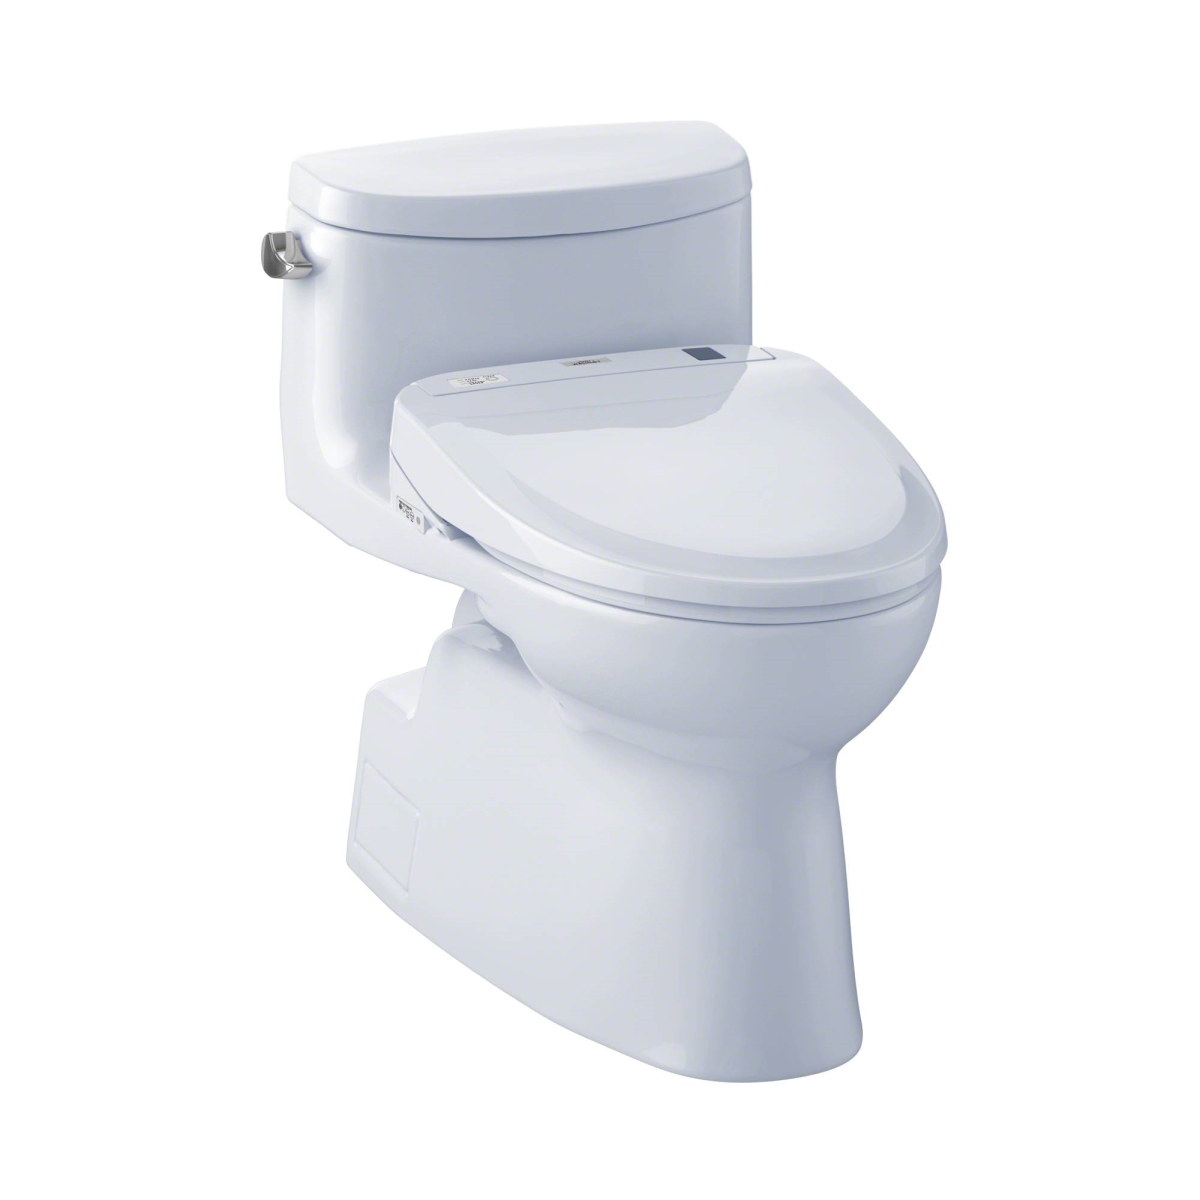 Mw644574cefg-01 Carolina Ii Elongated 1.28 Gpf Toilet & Washlet S300e Bidet Seat, Cotton White